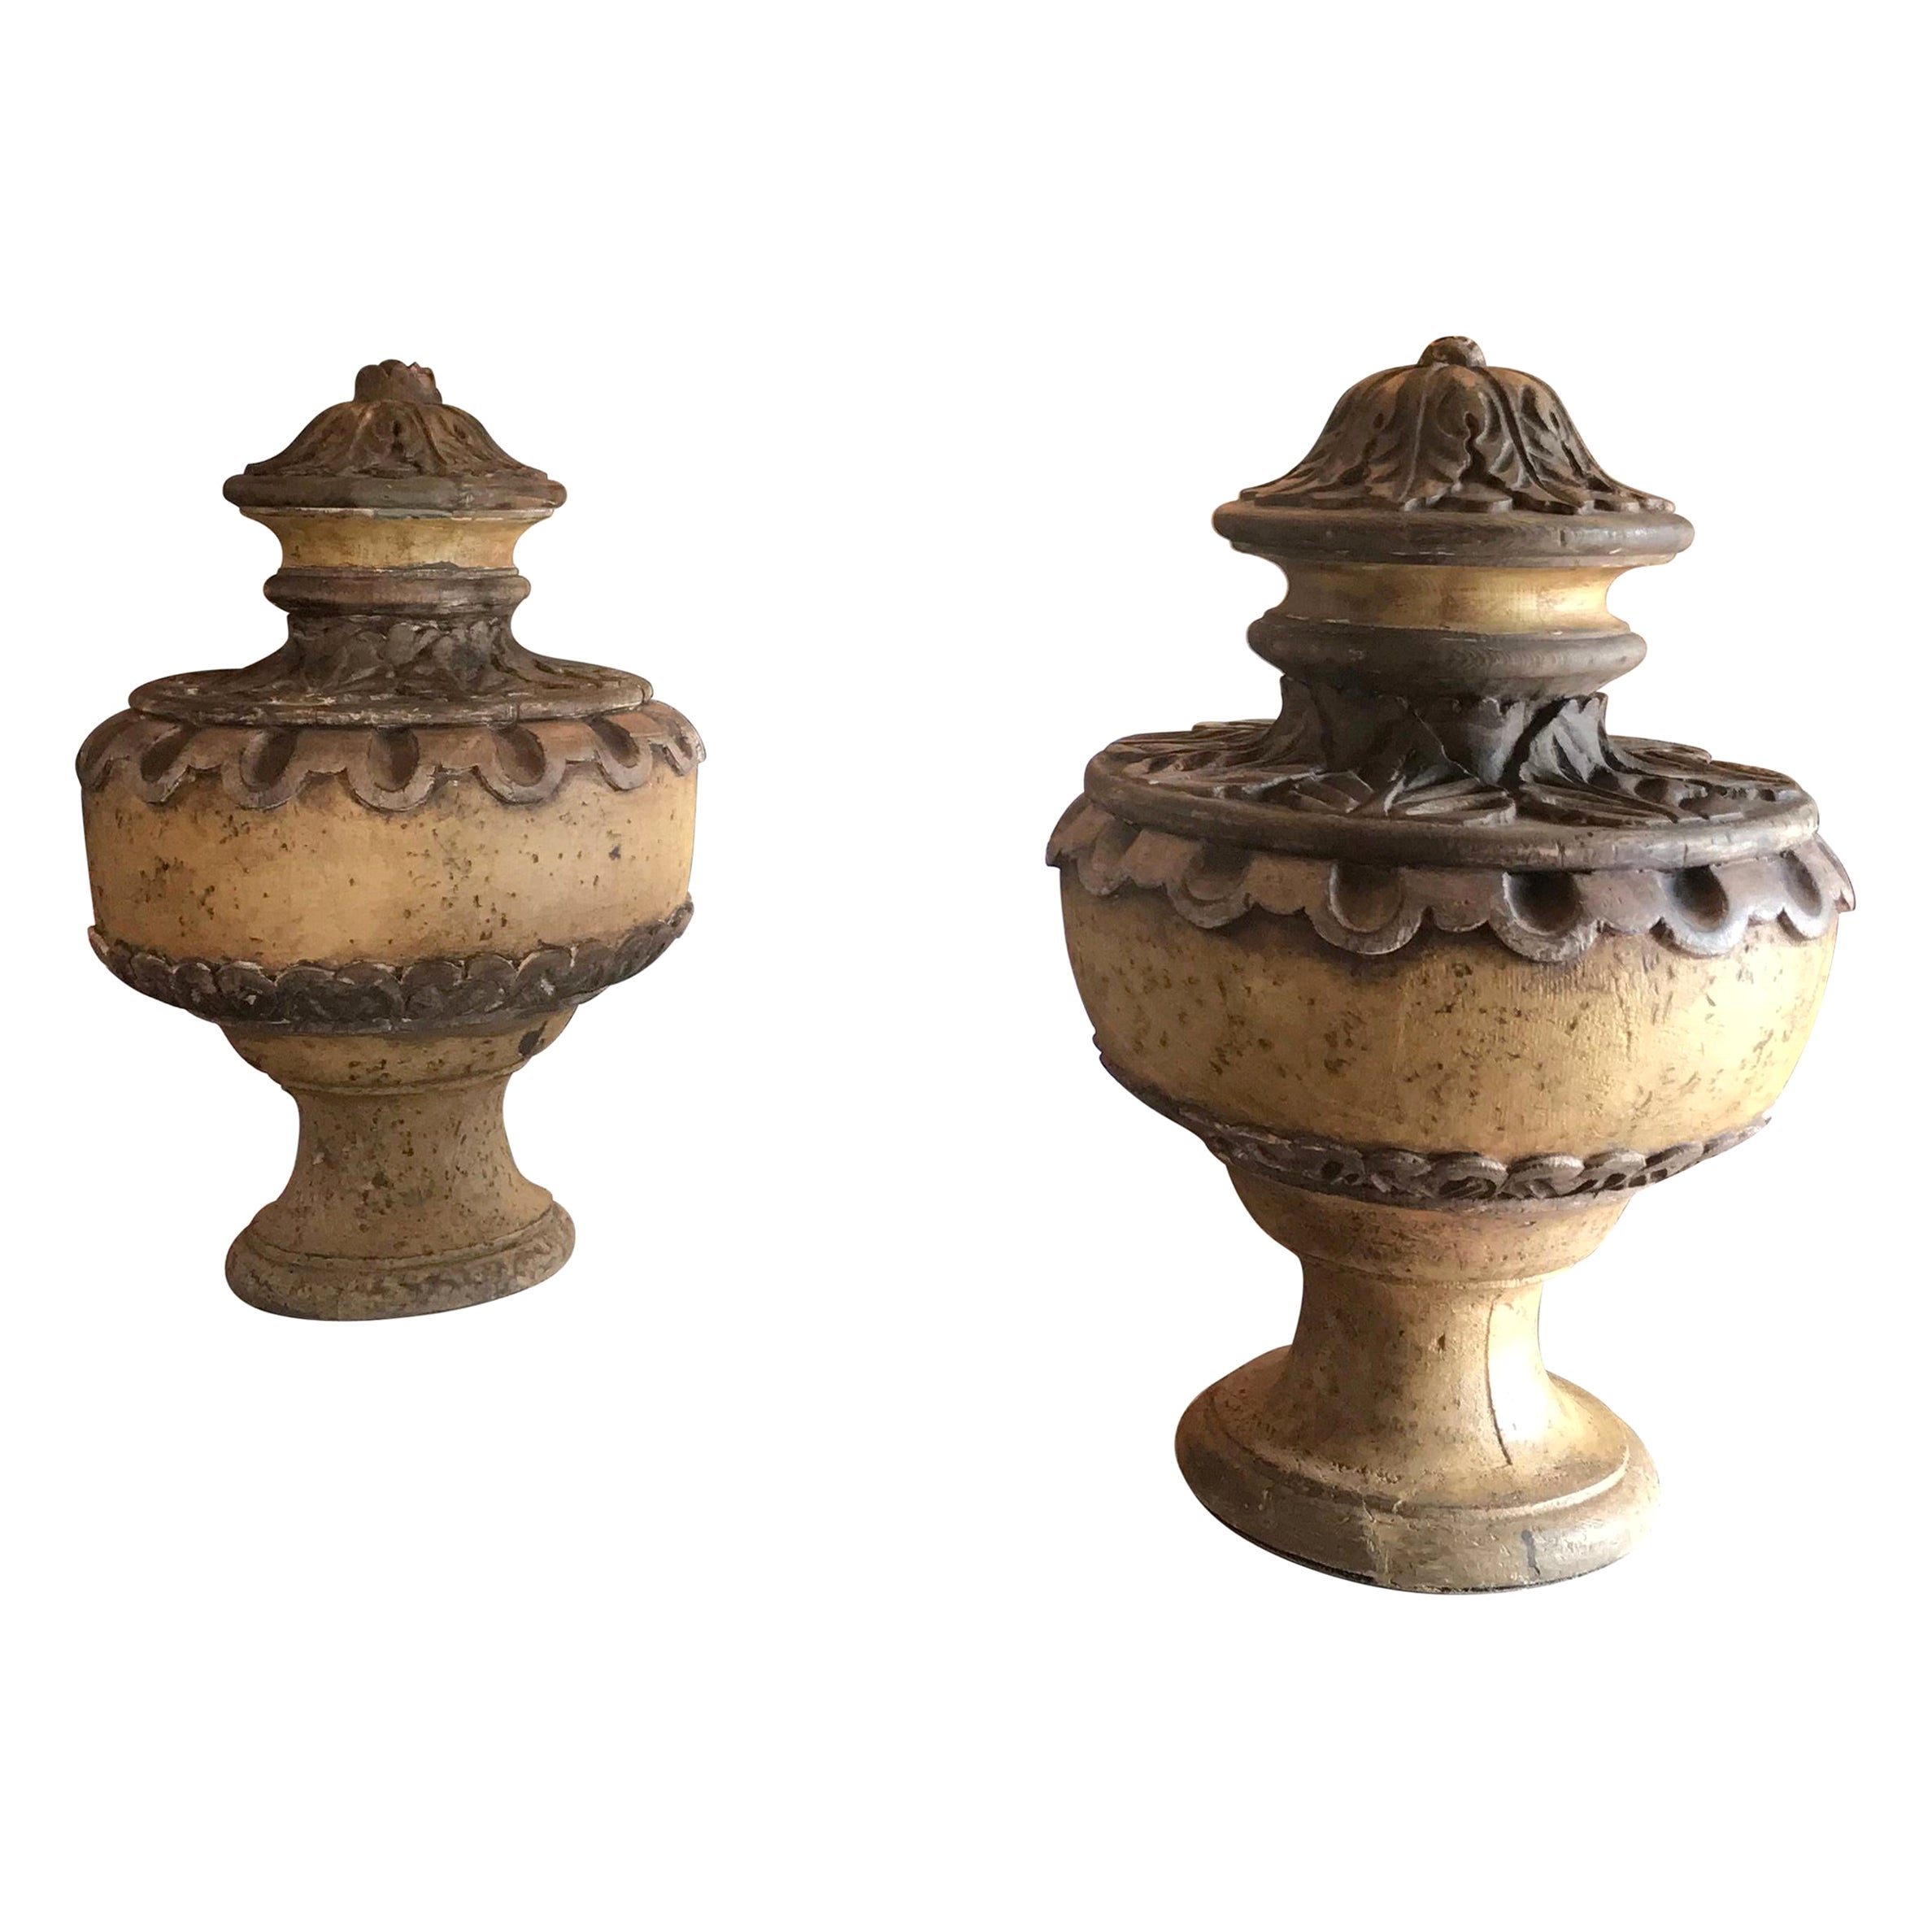 Paar handgeschnitzte Vasen in Form eines Tafelaufsatzes aus Holz, Vasenform, Urnen, Antiques Los Angeles